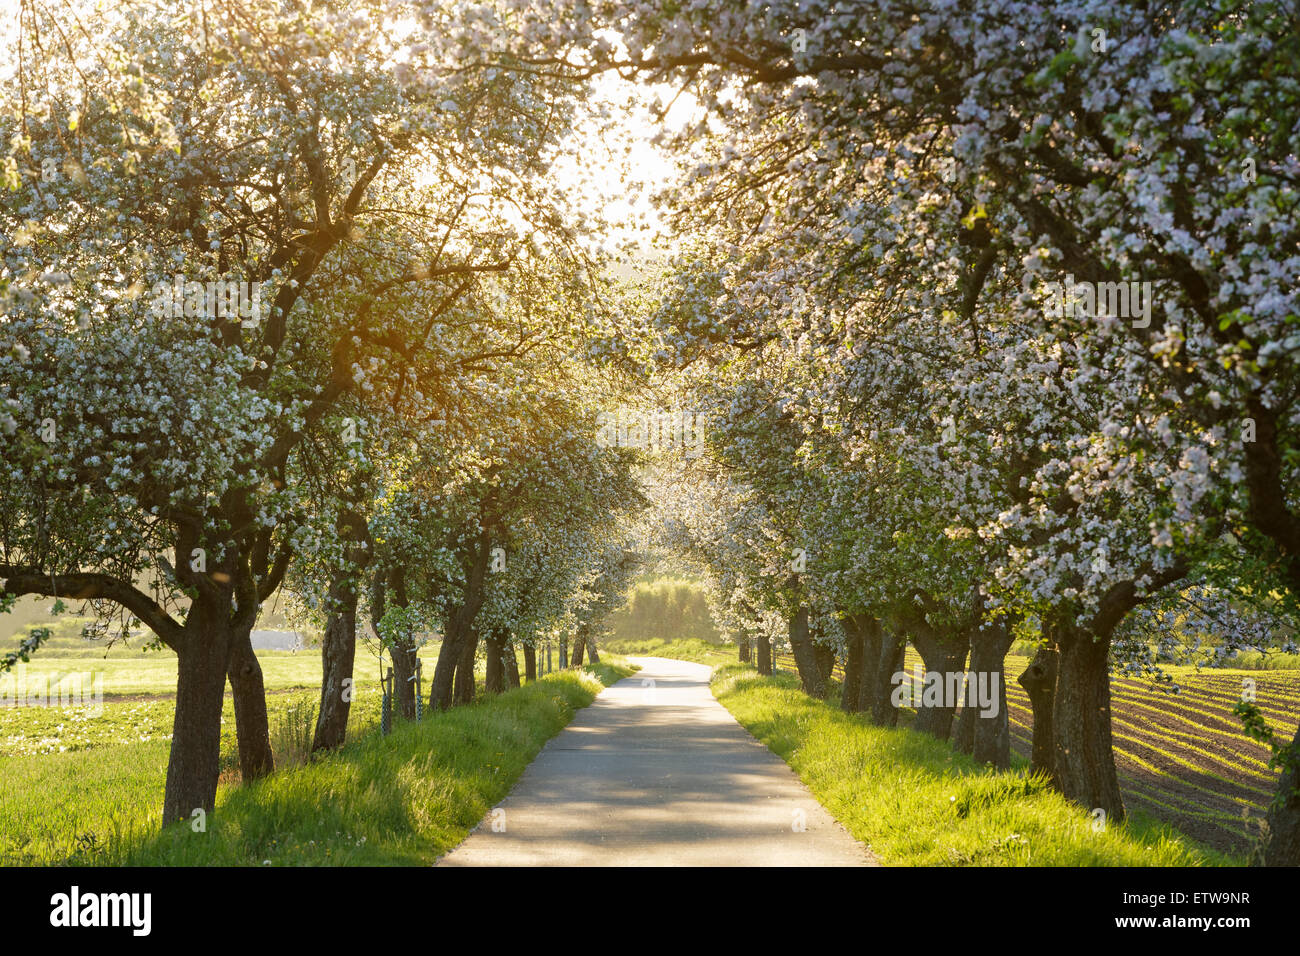 Deutschland, Bayern, Oberfranken, Radweg, Allee mit blühenden Apfelbäumen Stockfoto